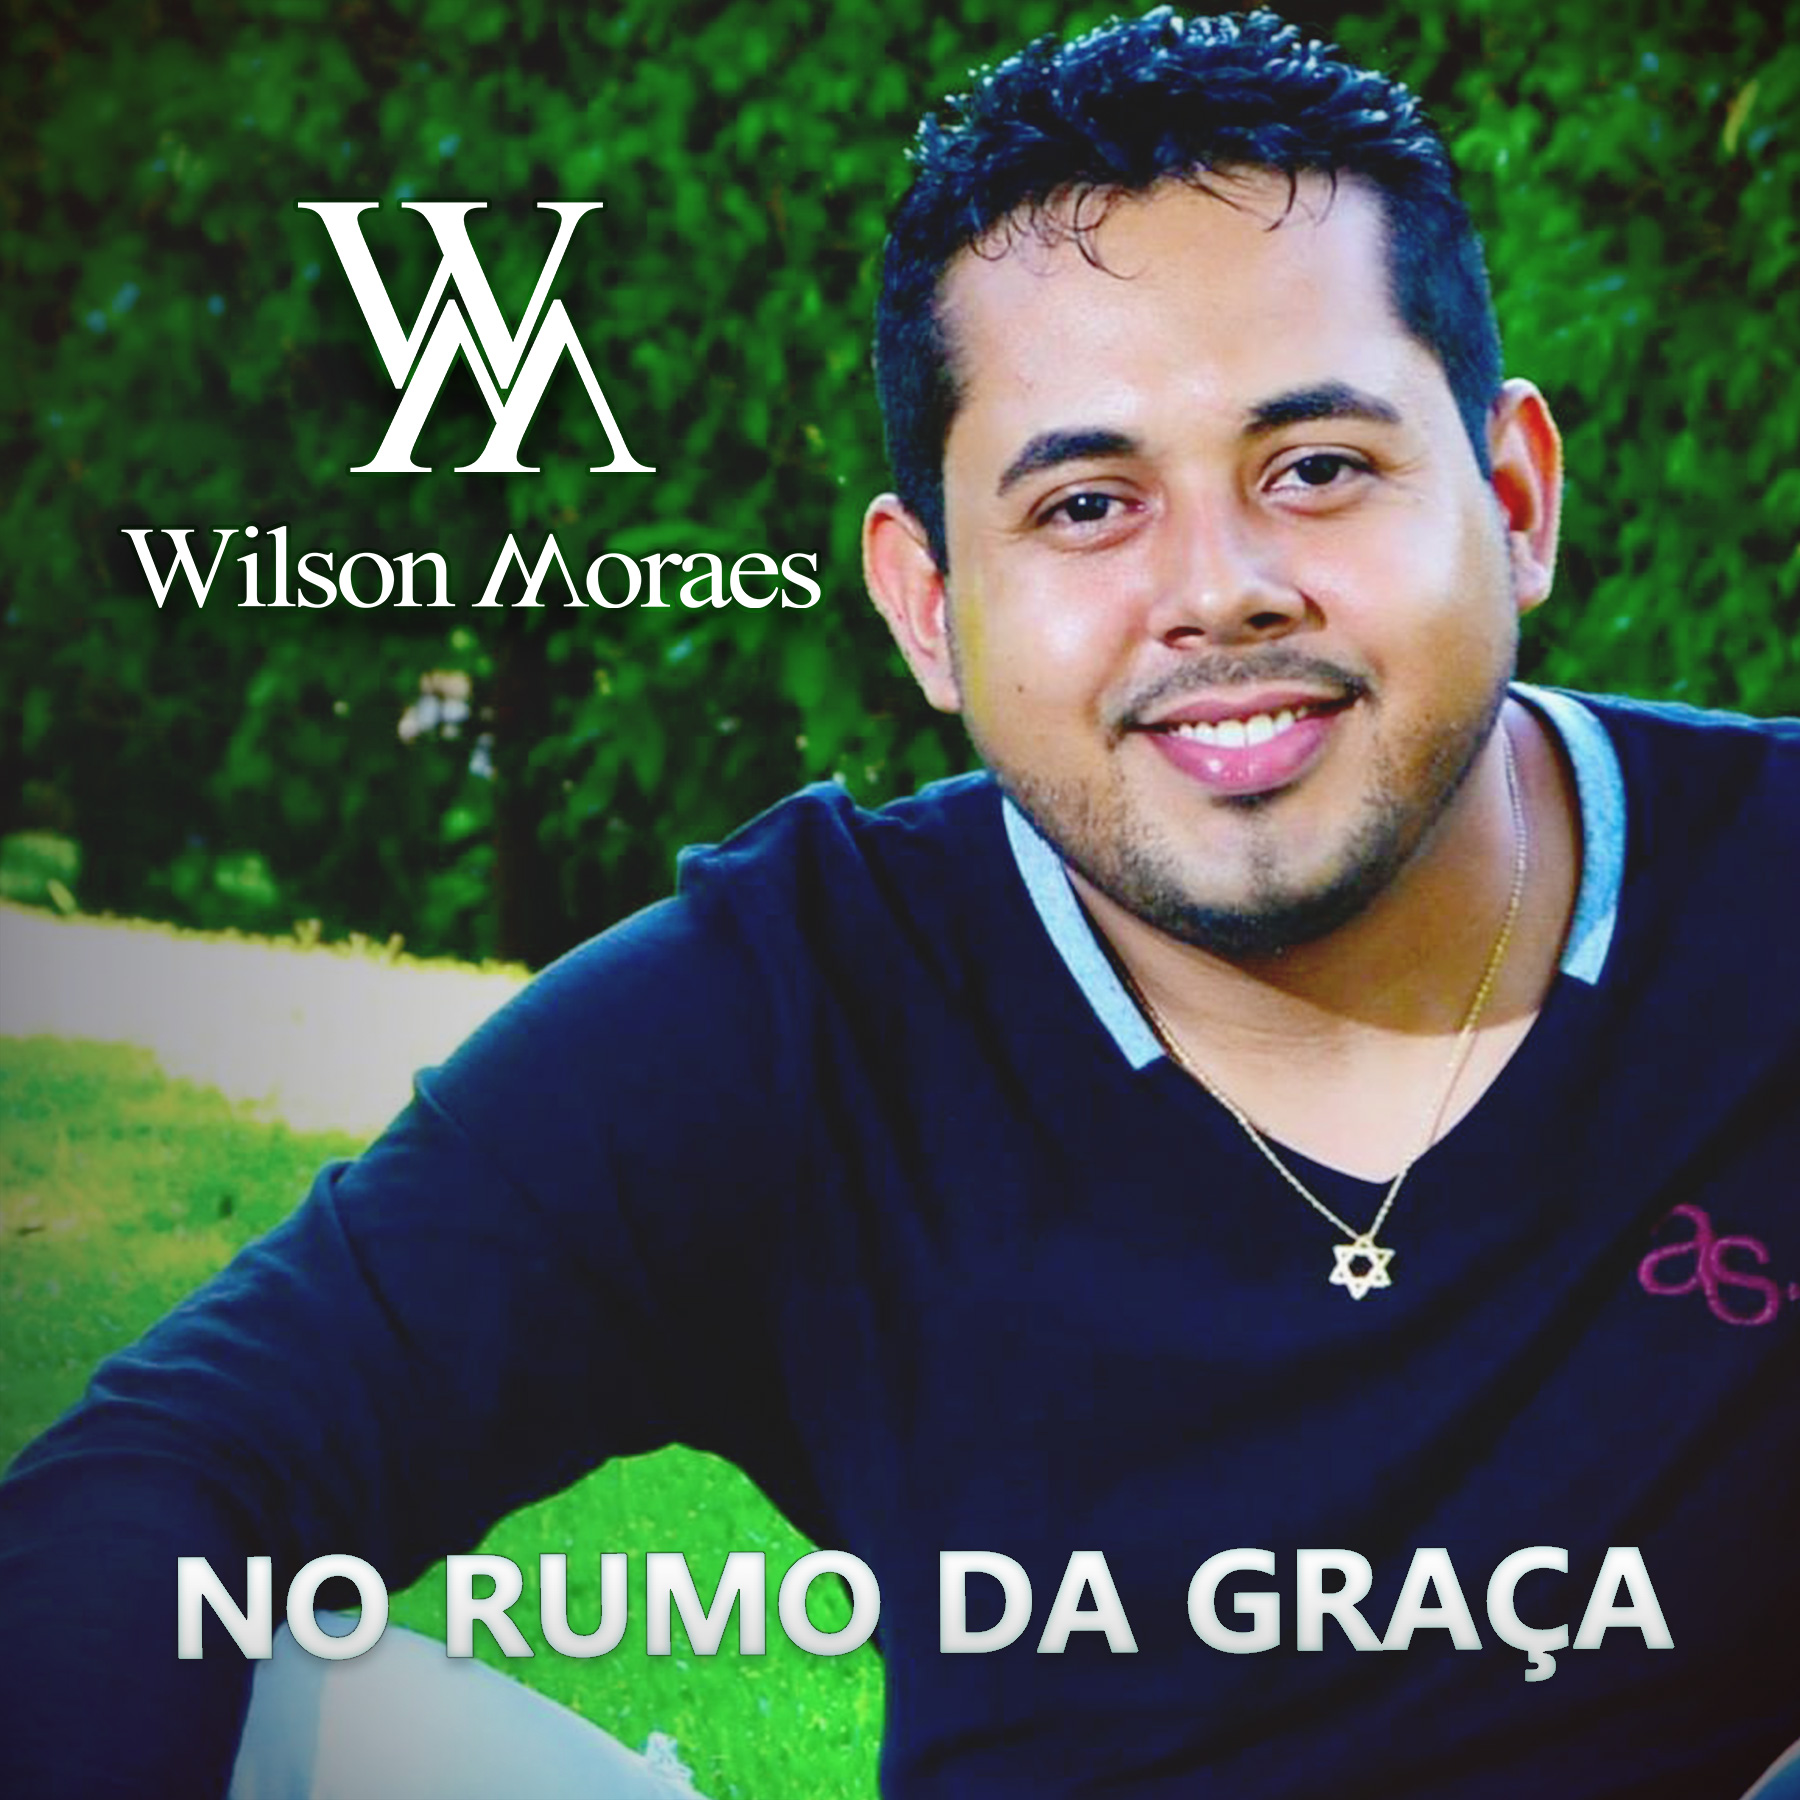 wilson moraes - no rumo da graça - capa cover 2018